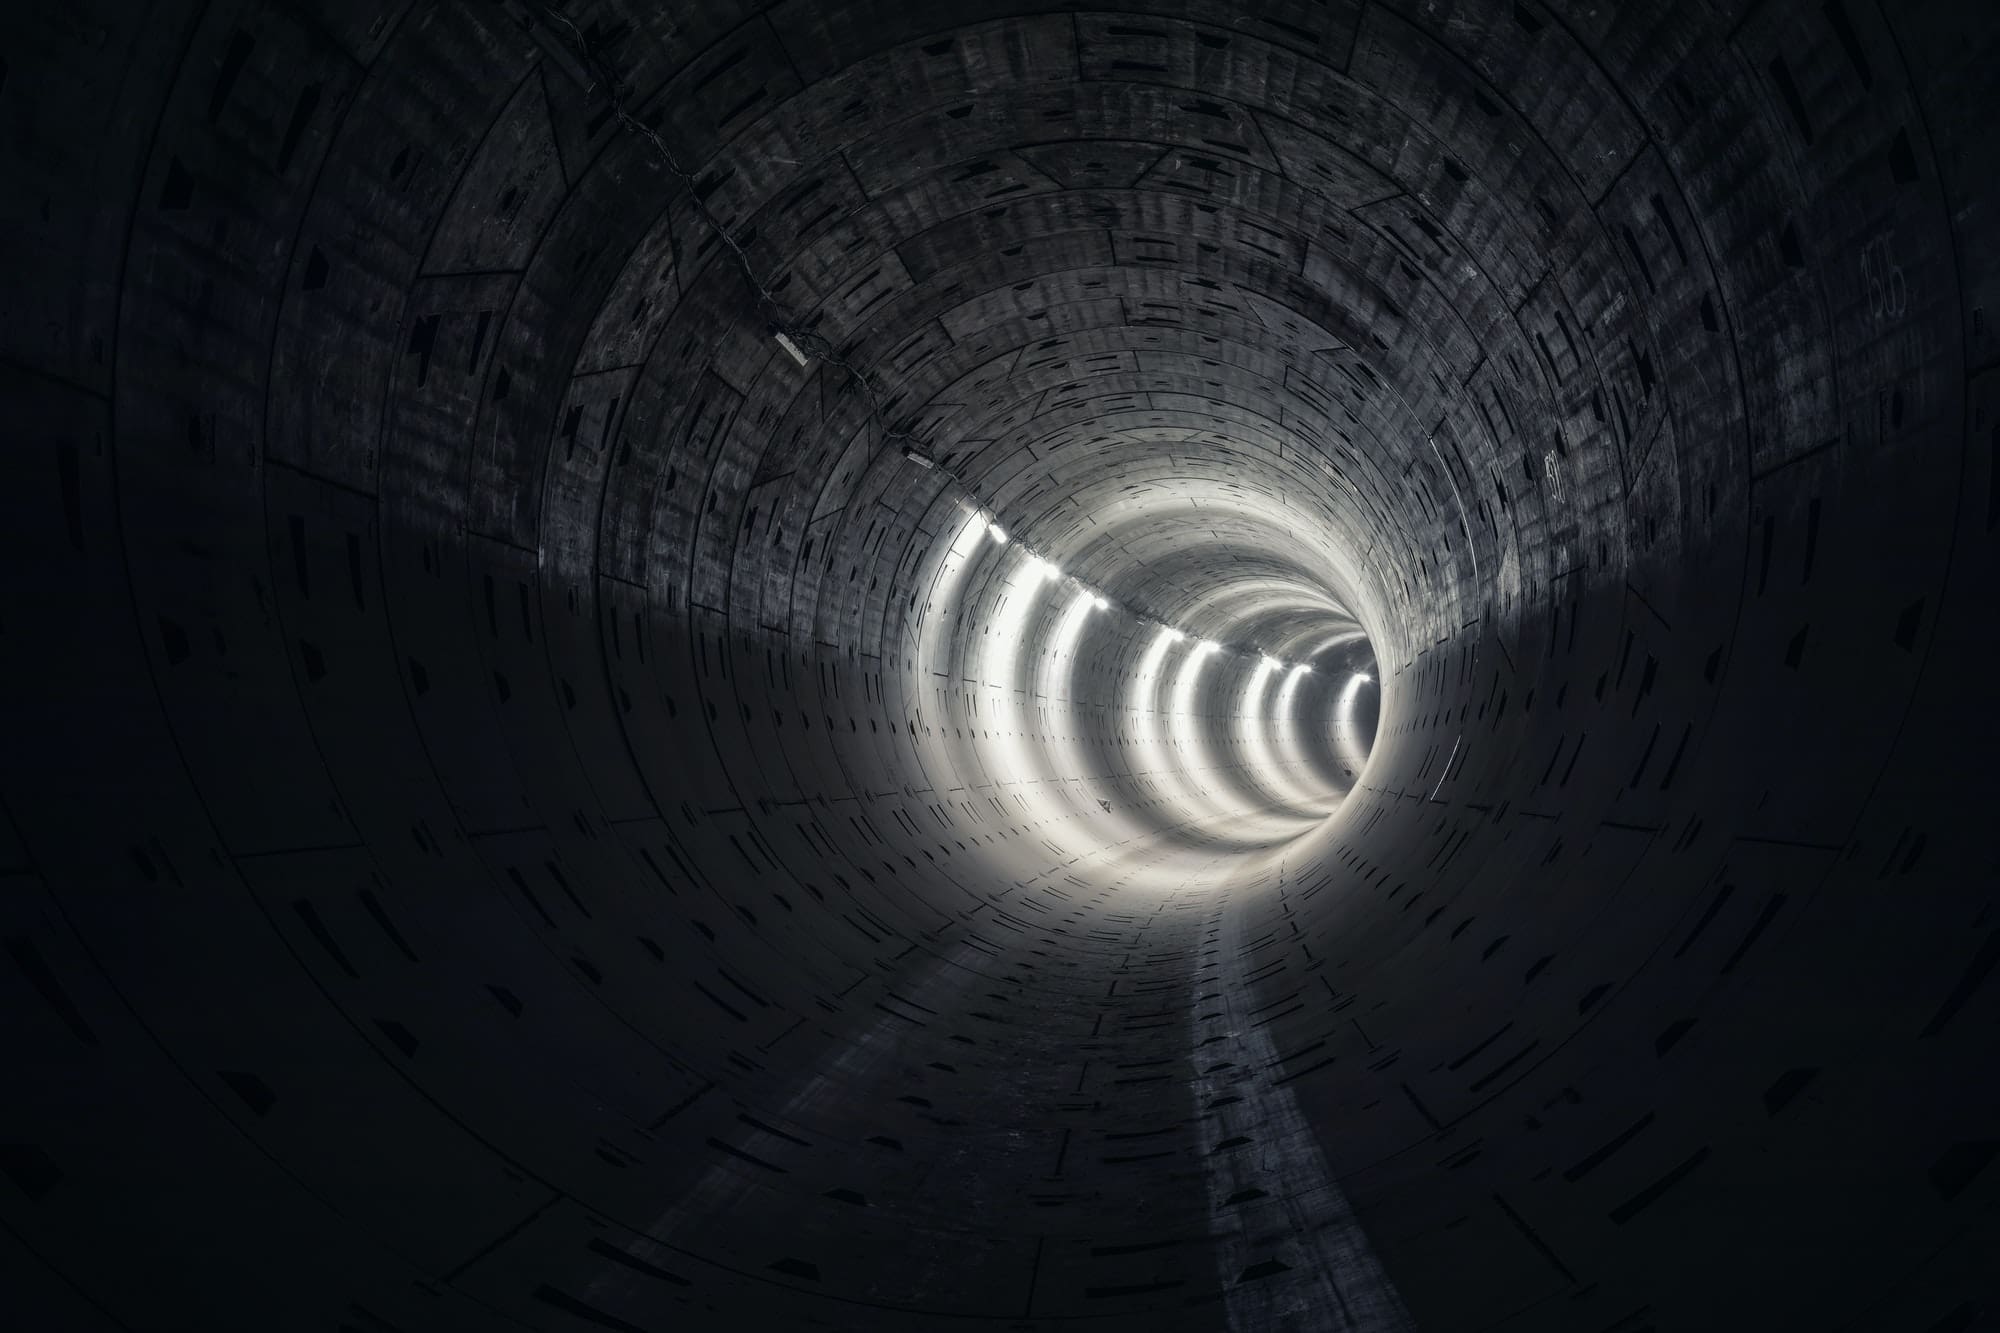 The dark subway tunnel